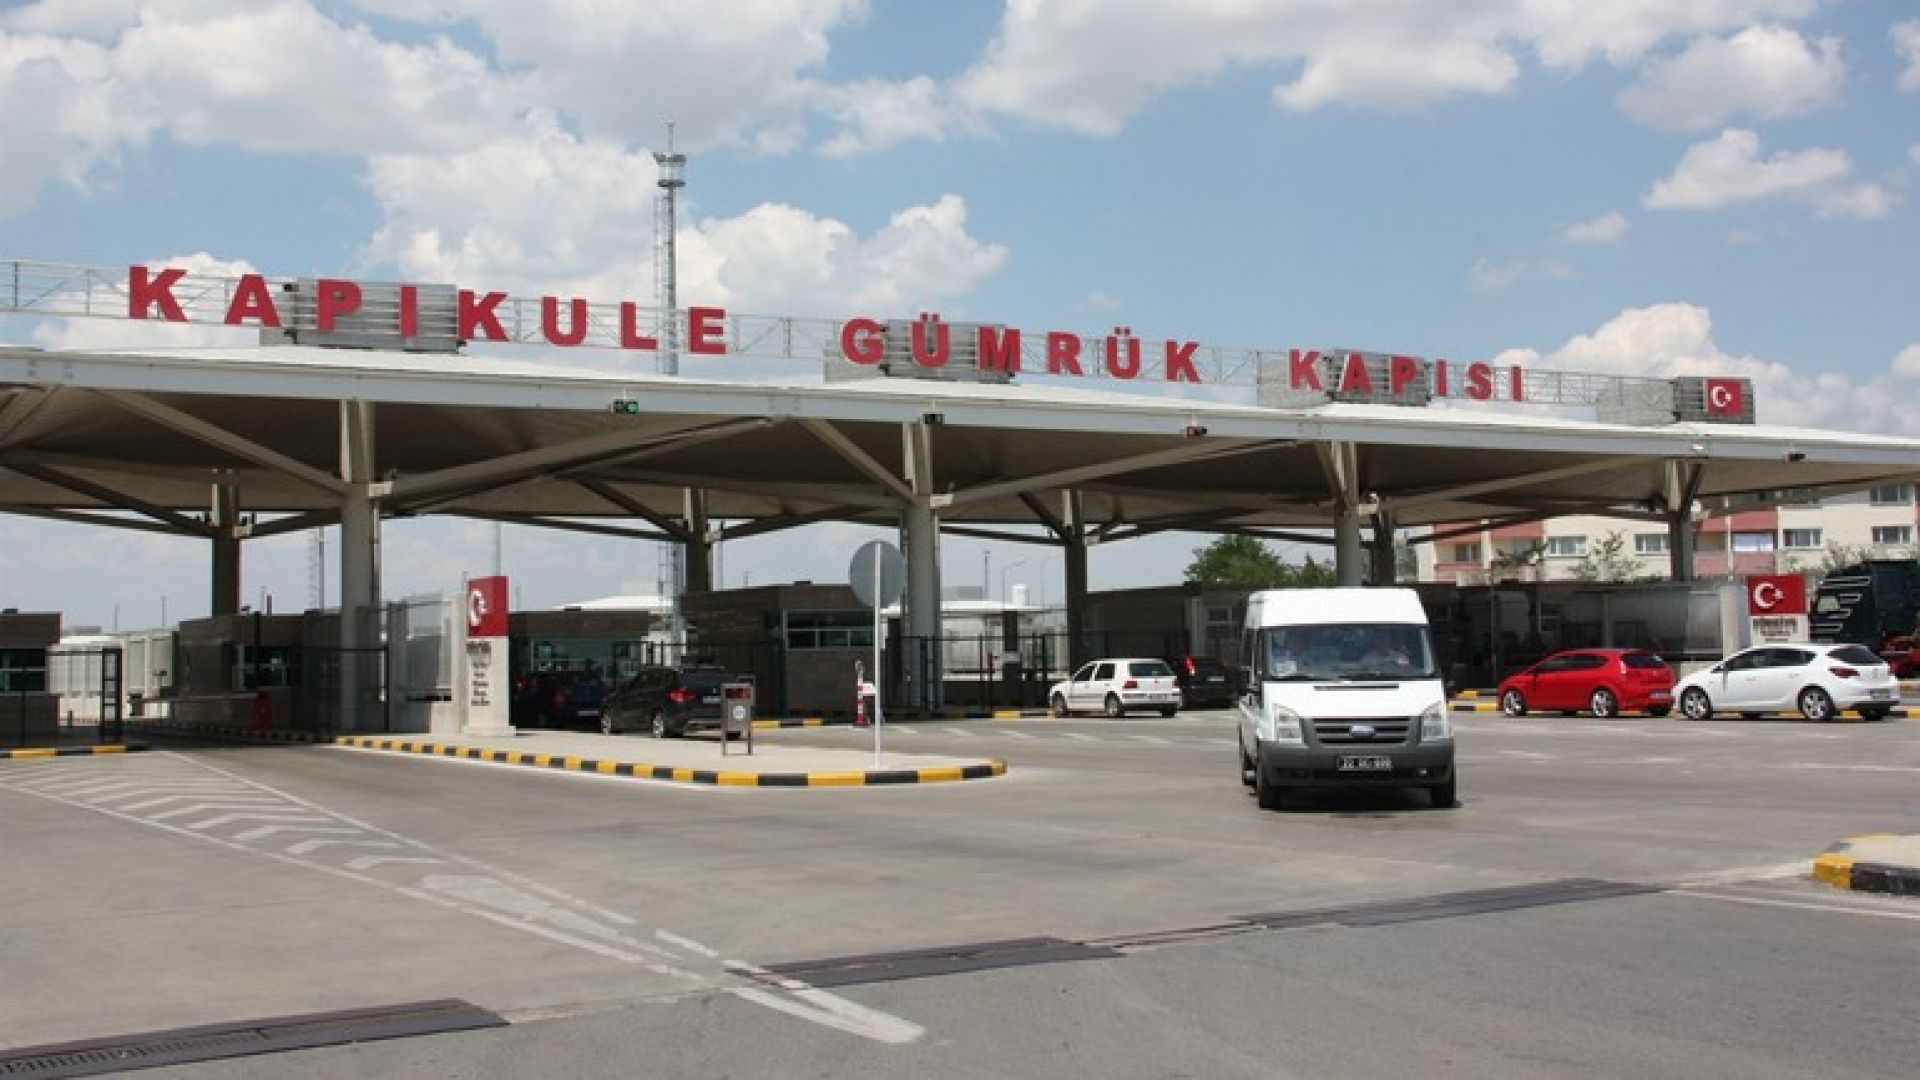 На Капъкуле арестуваха 8 българи за нелегална търговия